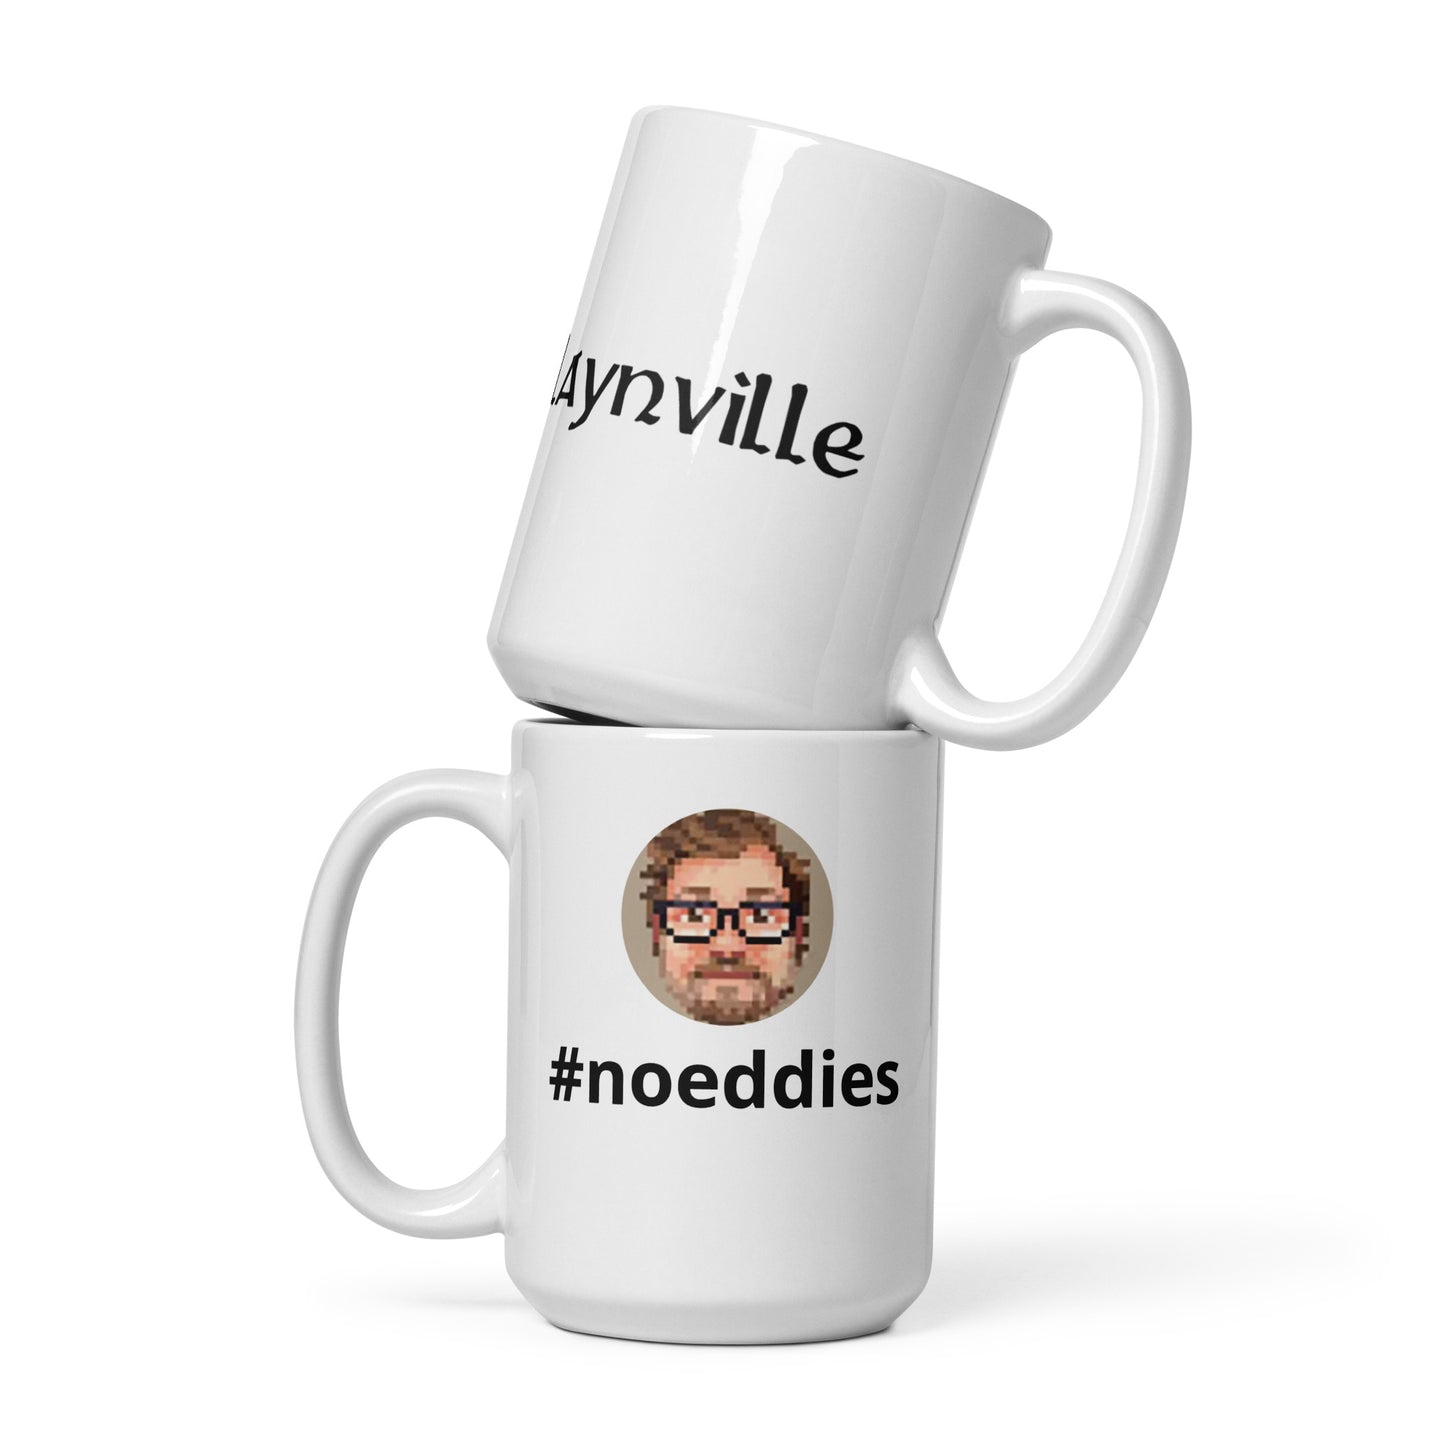 Slaynville #noeddies Mug